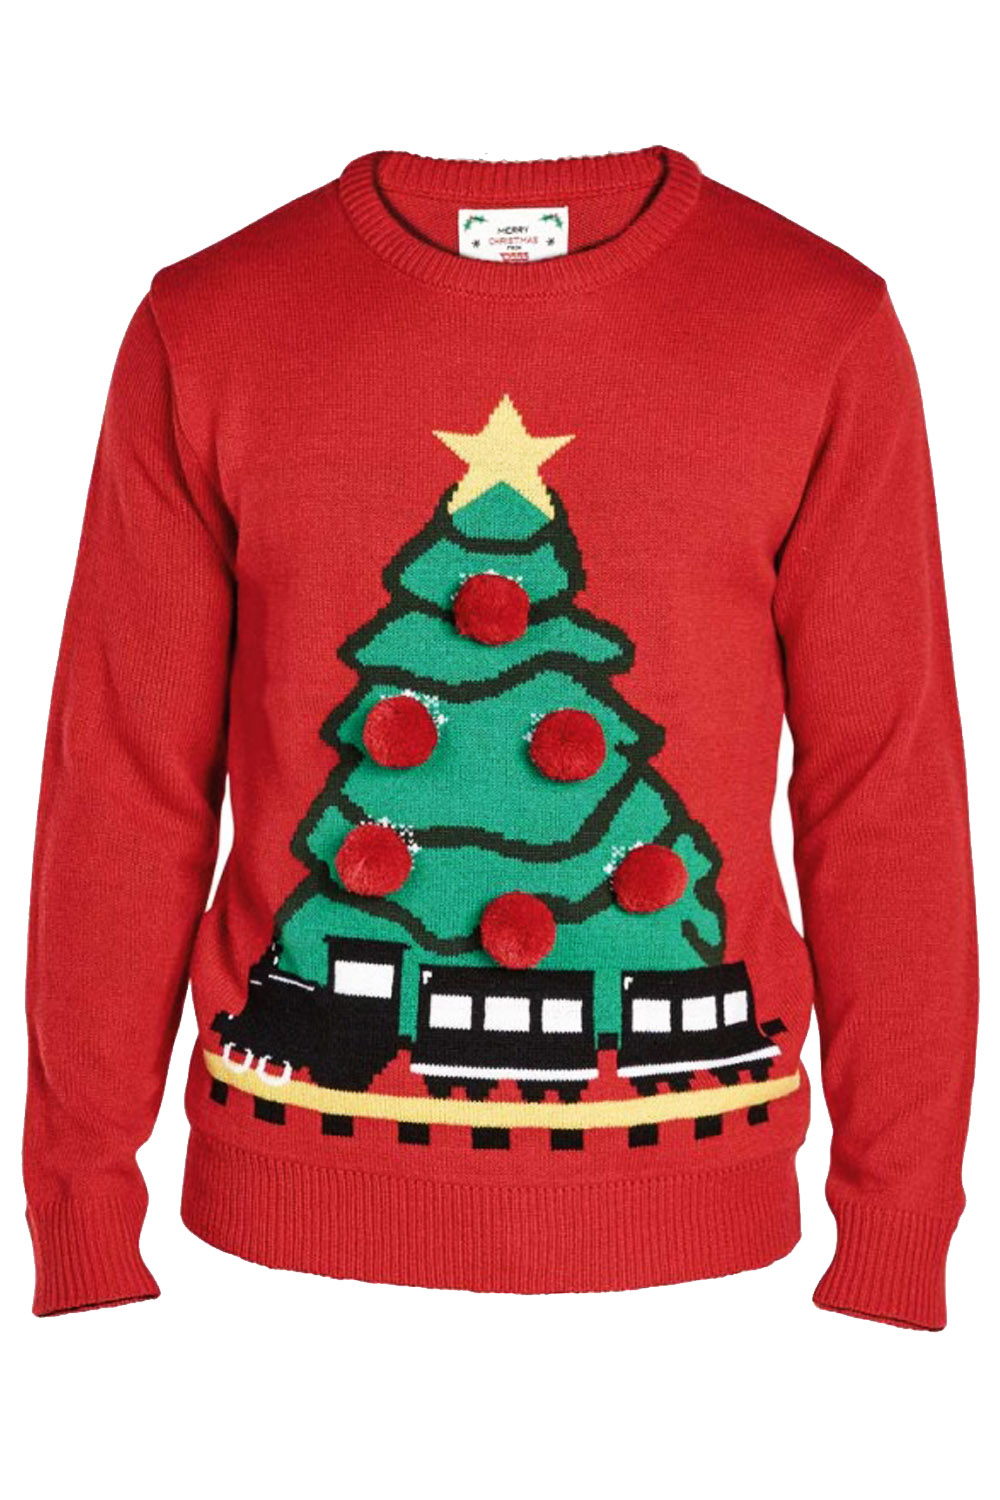 Duke D555 Mens King Size Christmas Tree Jumper 3D Knitted Festive Xmas Sweater | eBay